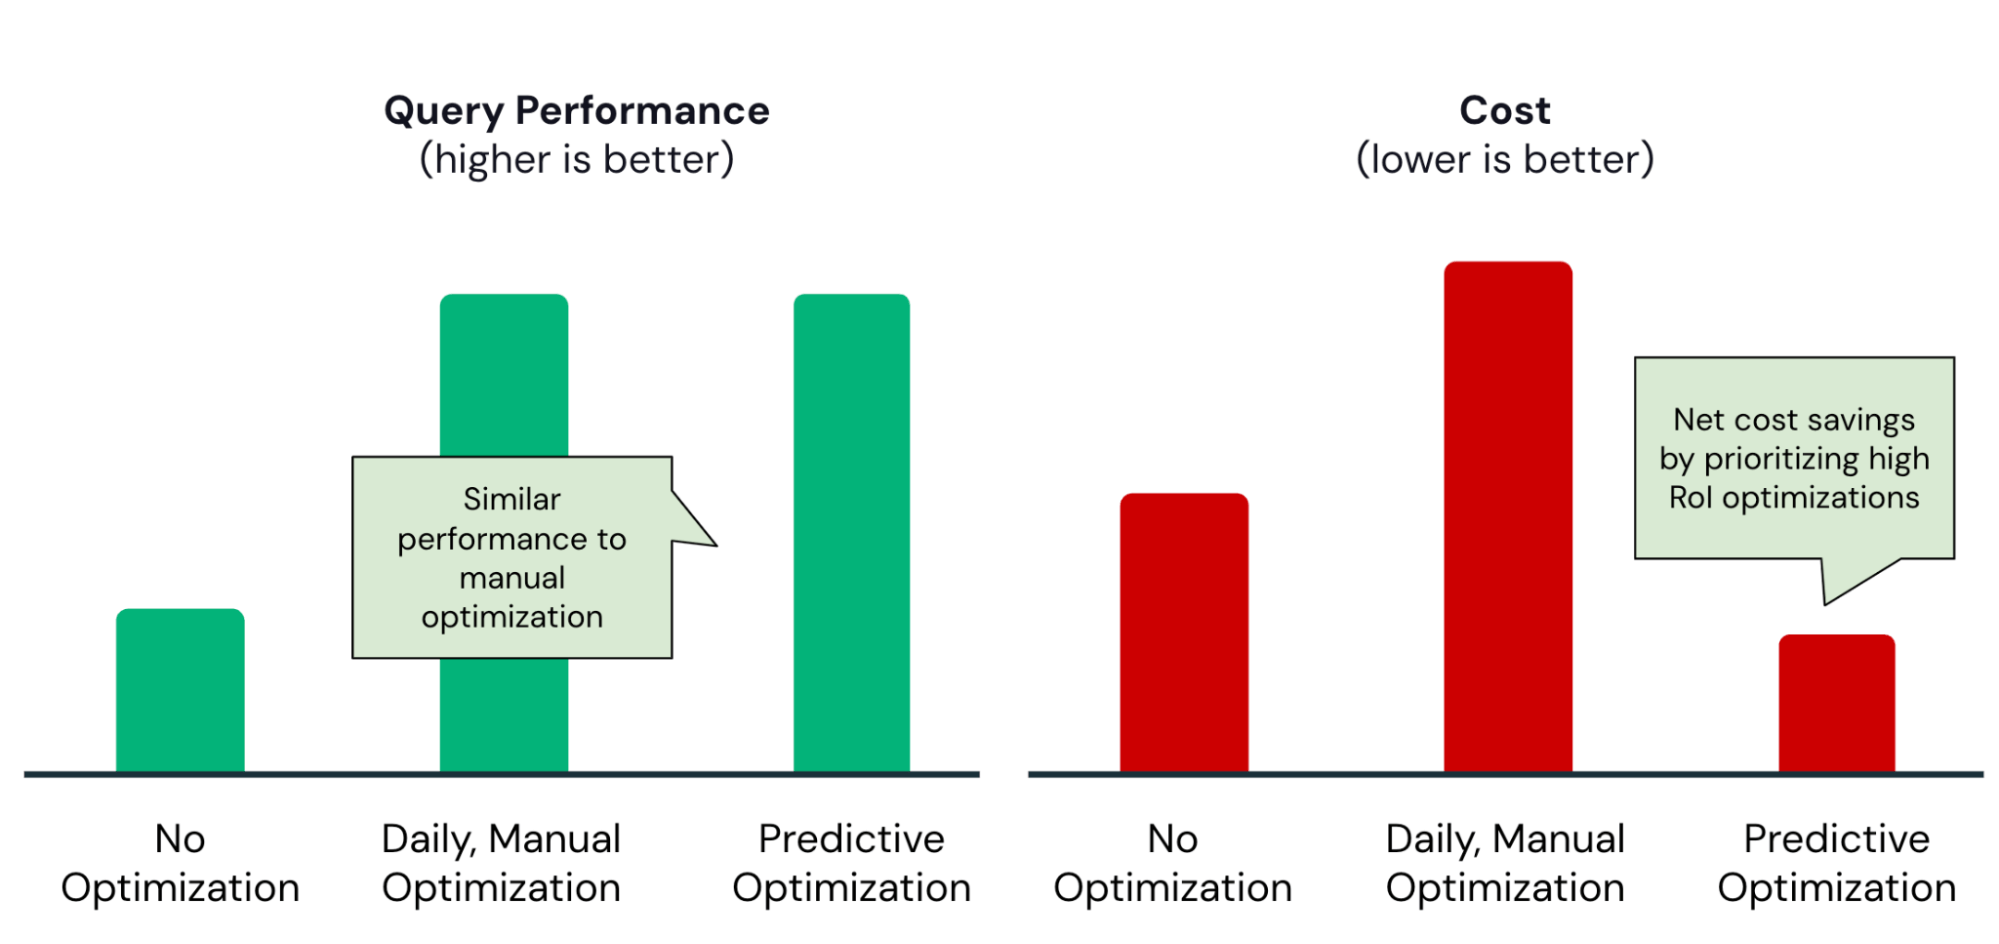 Les graphiques côte à côte montrent qu'en termes de performances et de coûts des requêtes, l'optimisation prédictive trouve le bon équilibre et n'exécute que des optimisations avec un retour sur investissement élevé.